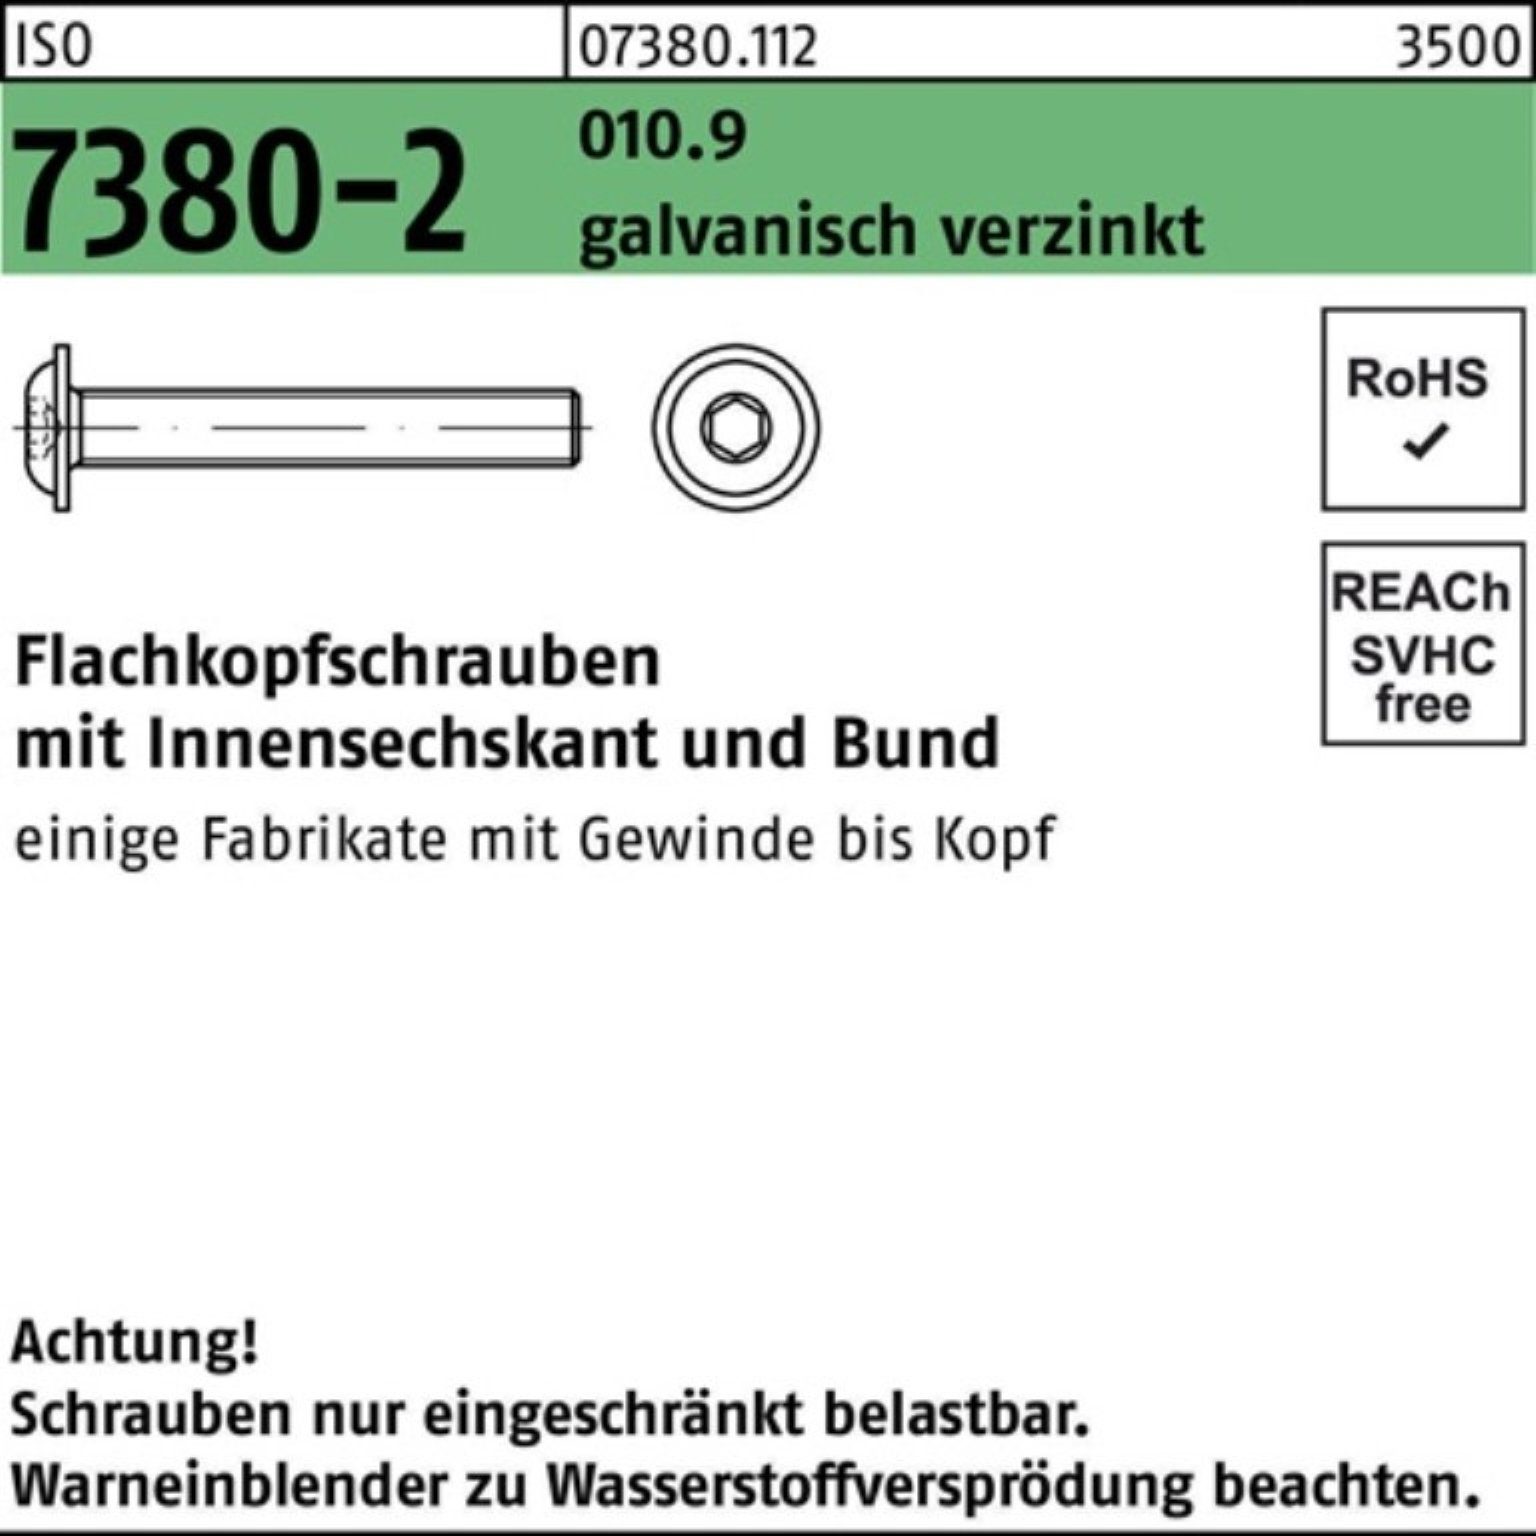 Reyher Schraube 500er gal Flachkopfschraube M4x30 Bund/Innen-6kt ISO 010.9 Pack 7380-2